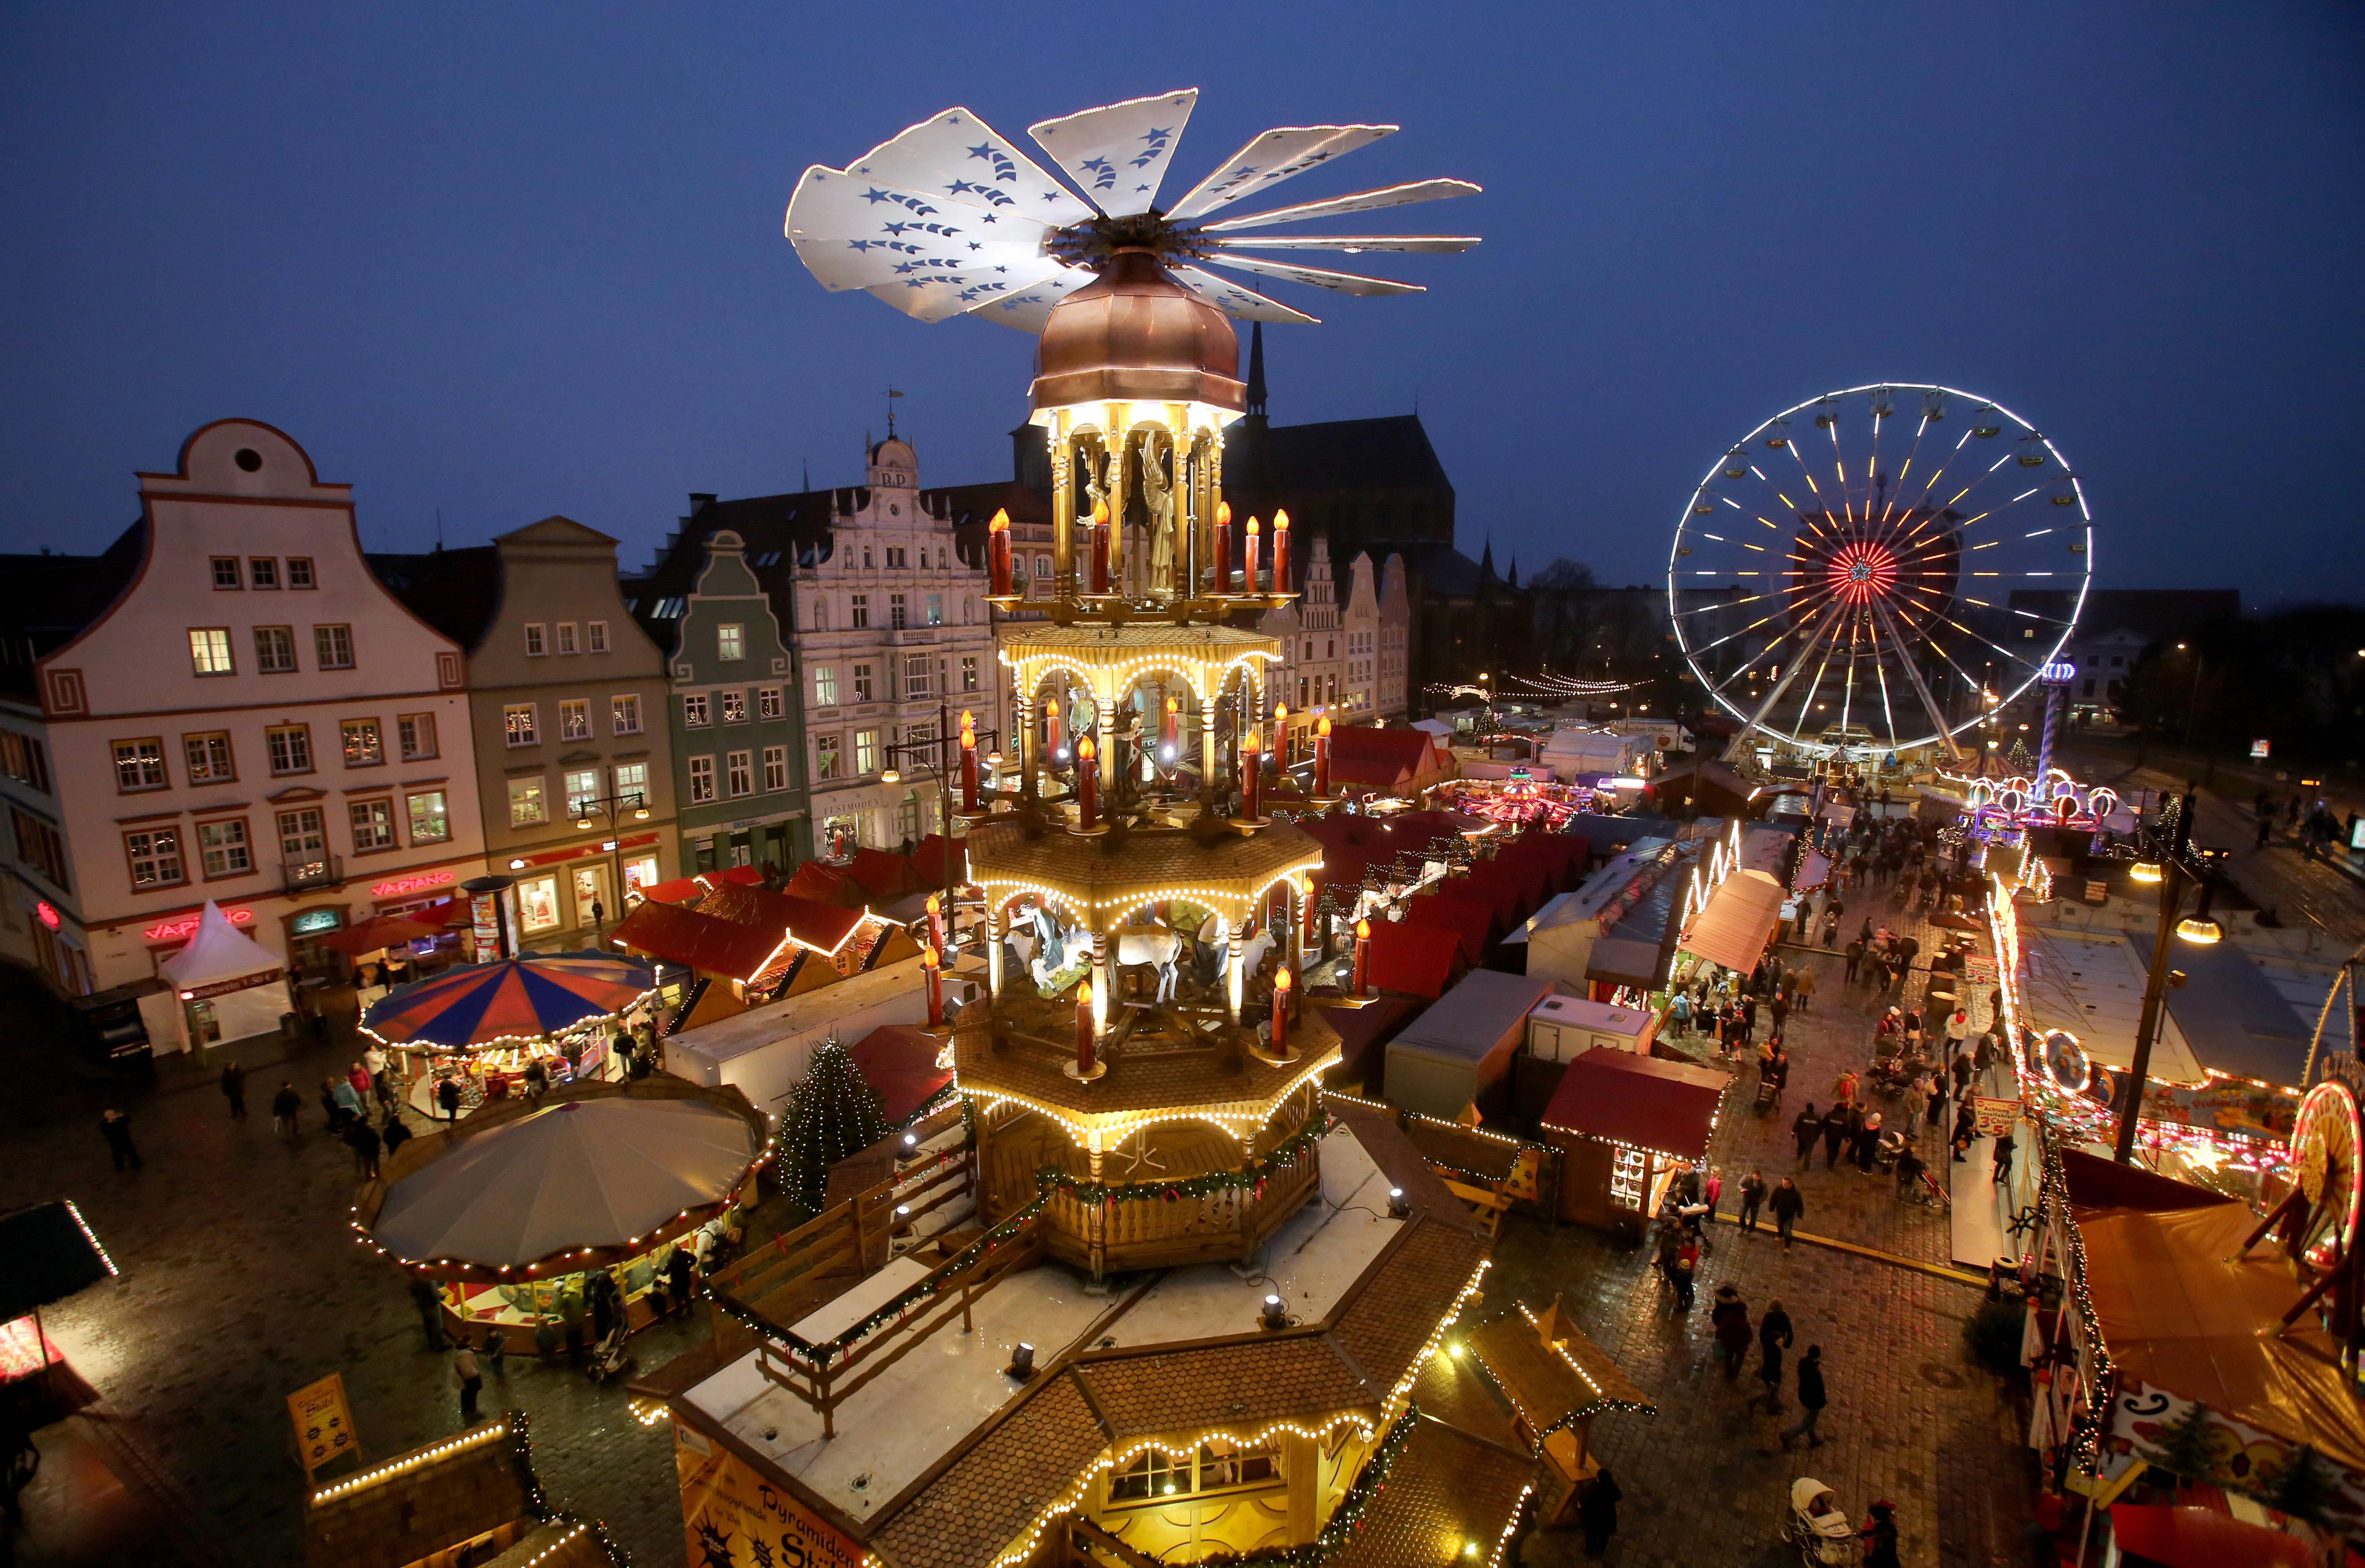 Christmas market in Rostock